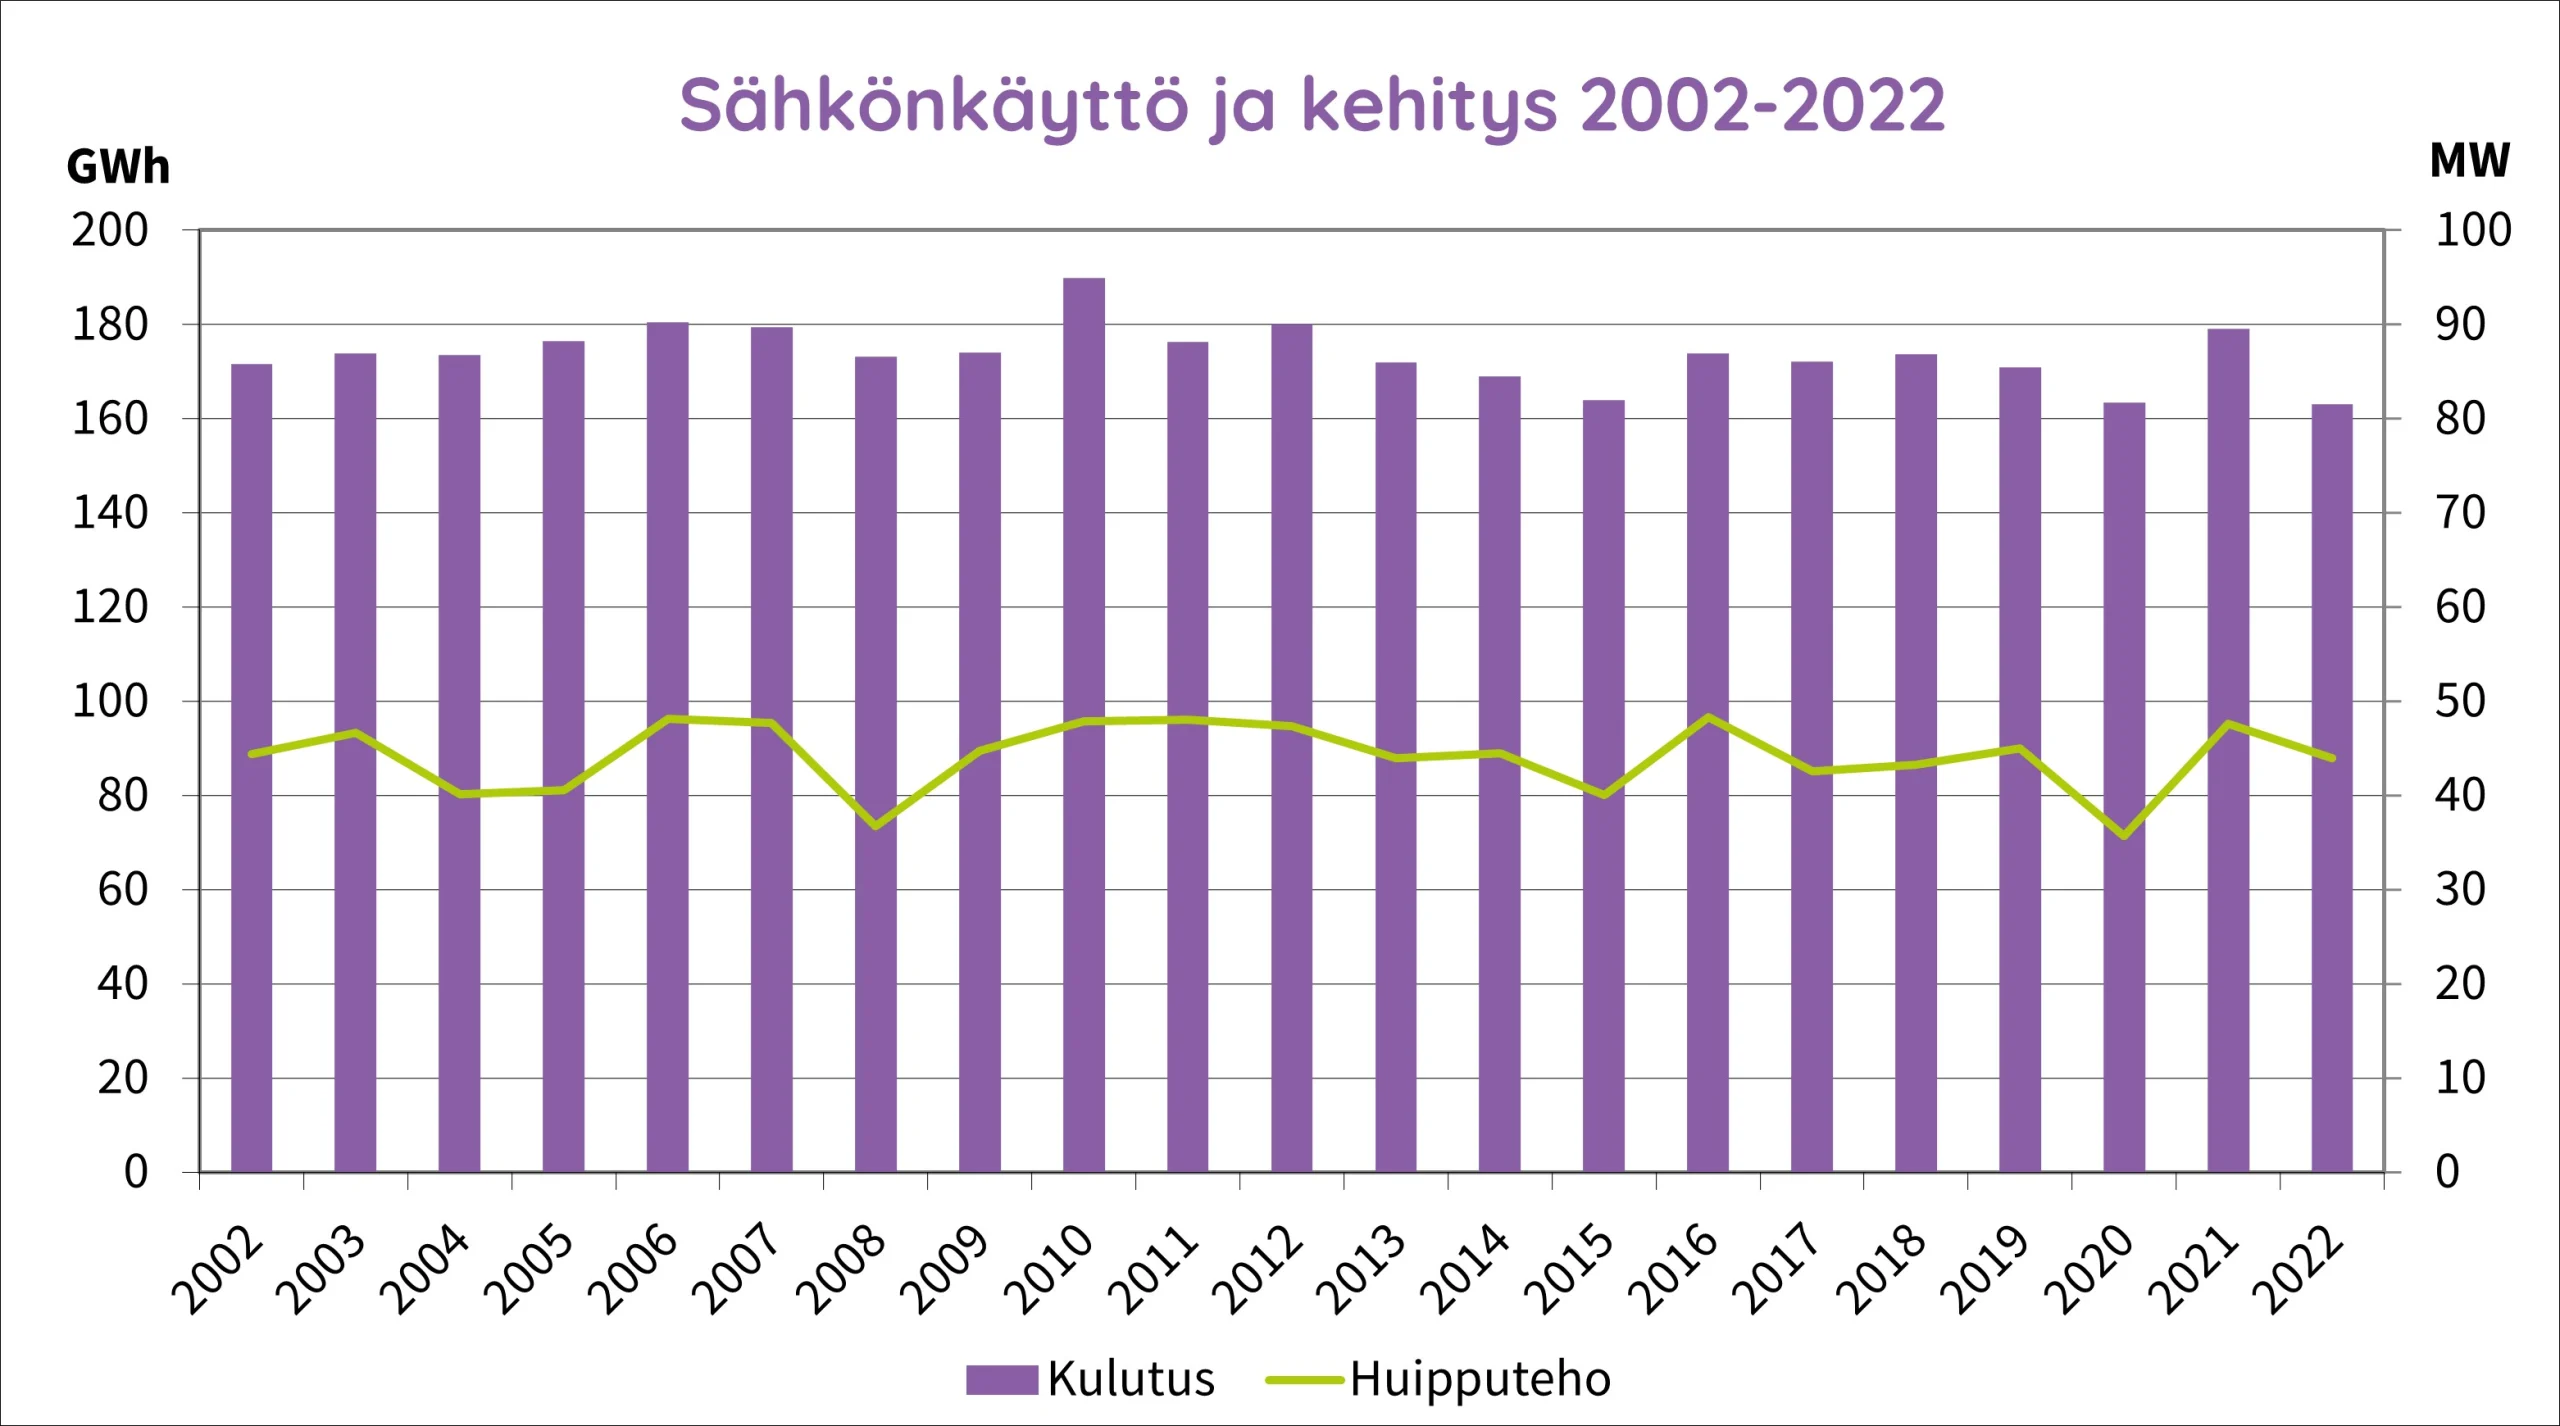 Sähkön käyttö ja kehitys 2002-2022